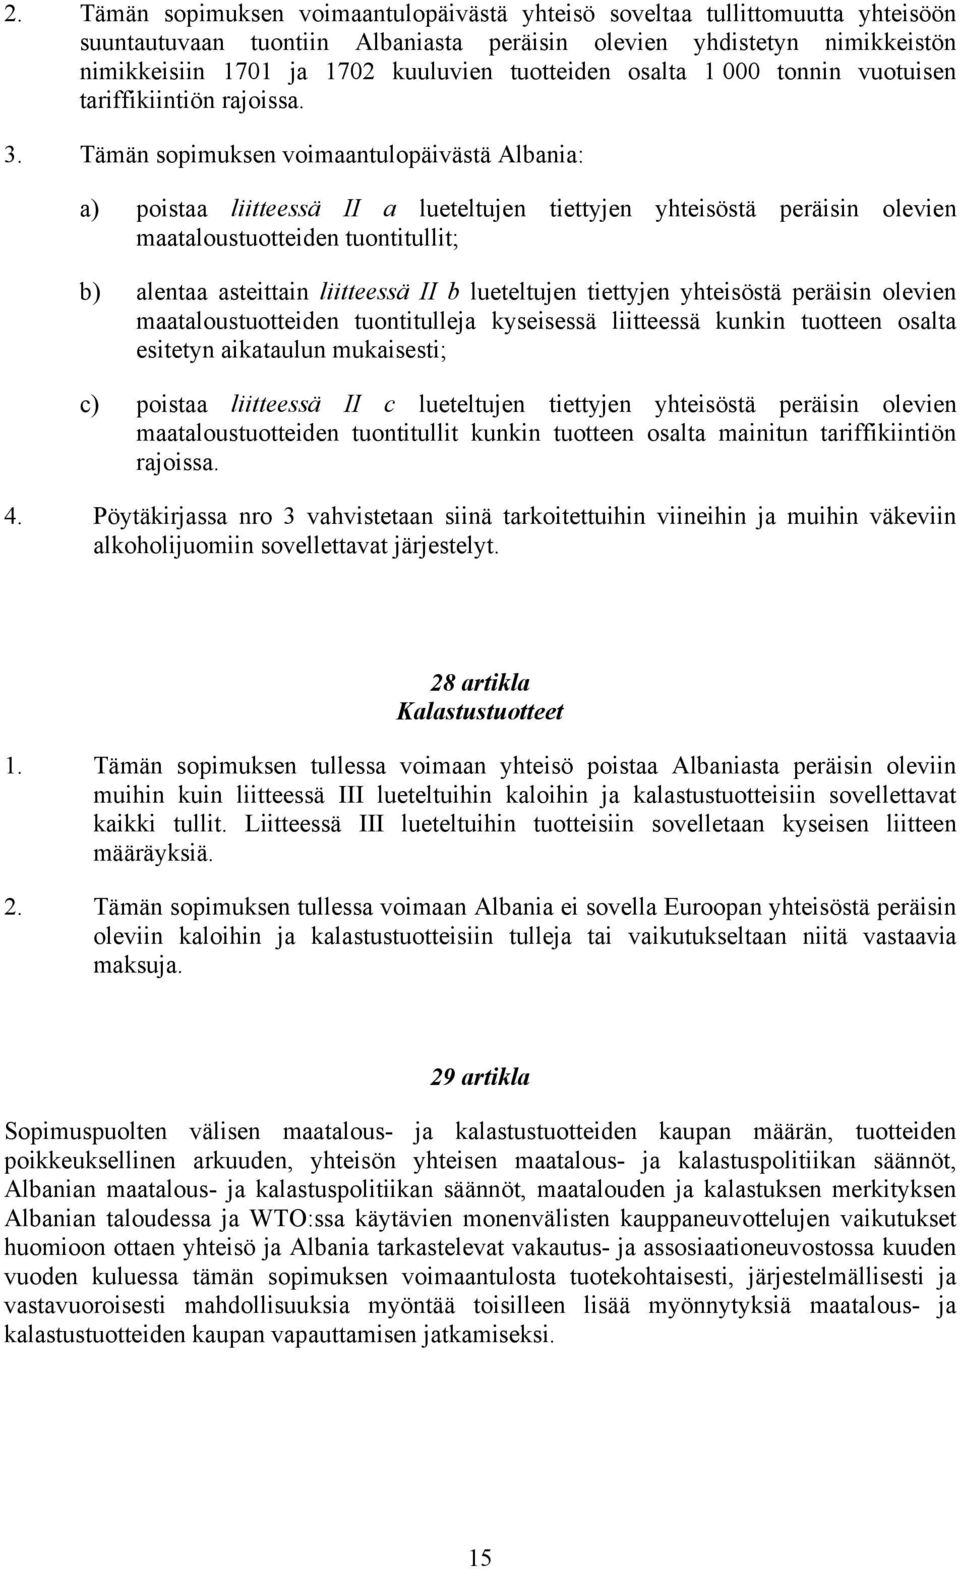 Tämän sopimuksen voimaantulopäivästä Albania: a) poistaa liitteessä II a lueteltujen tiettyjen yhteisöstä peräisin olevien maataloustuotteiden tuontitullit; b) alentaa asteittain liitteessä II b